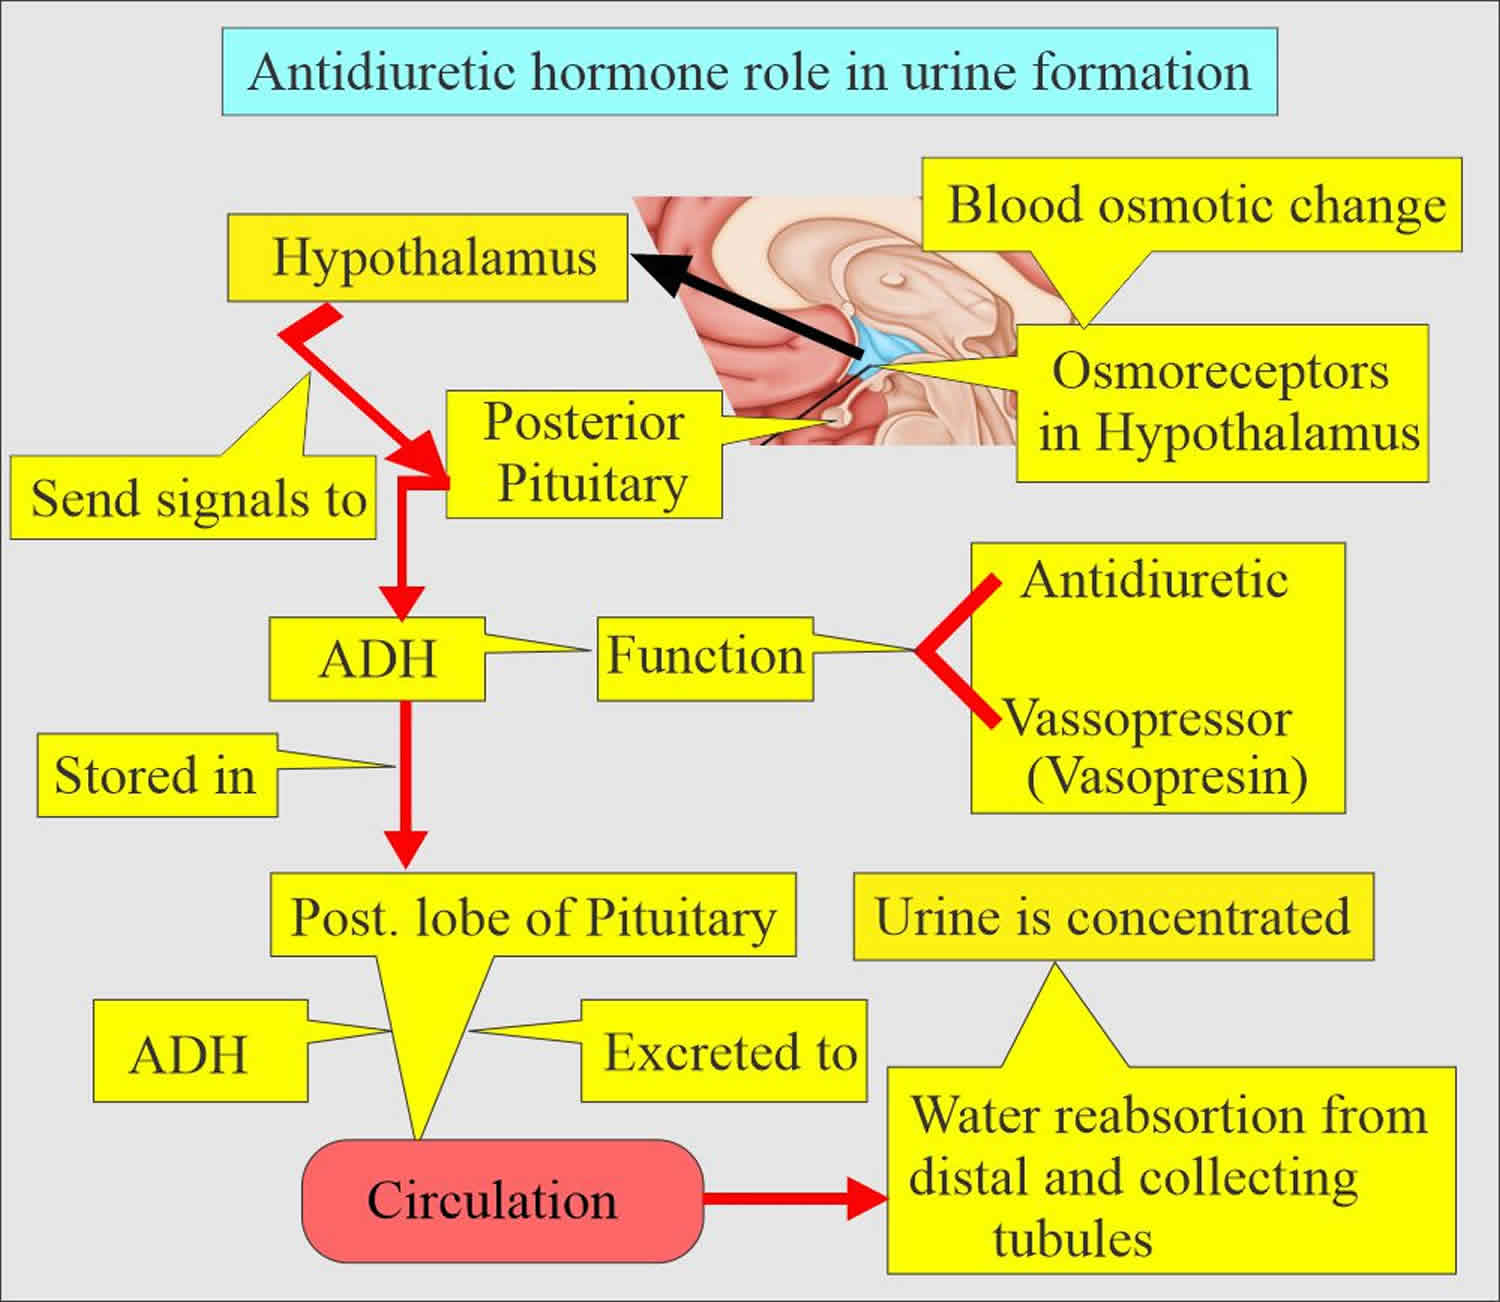 Antidiuretic hormone production